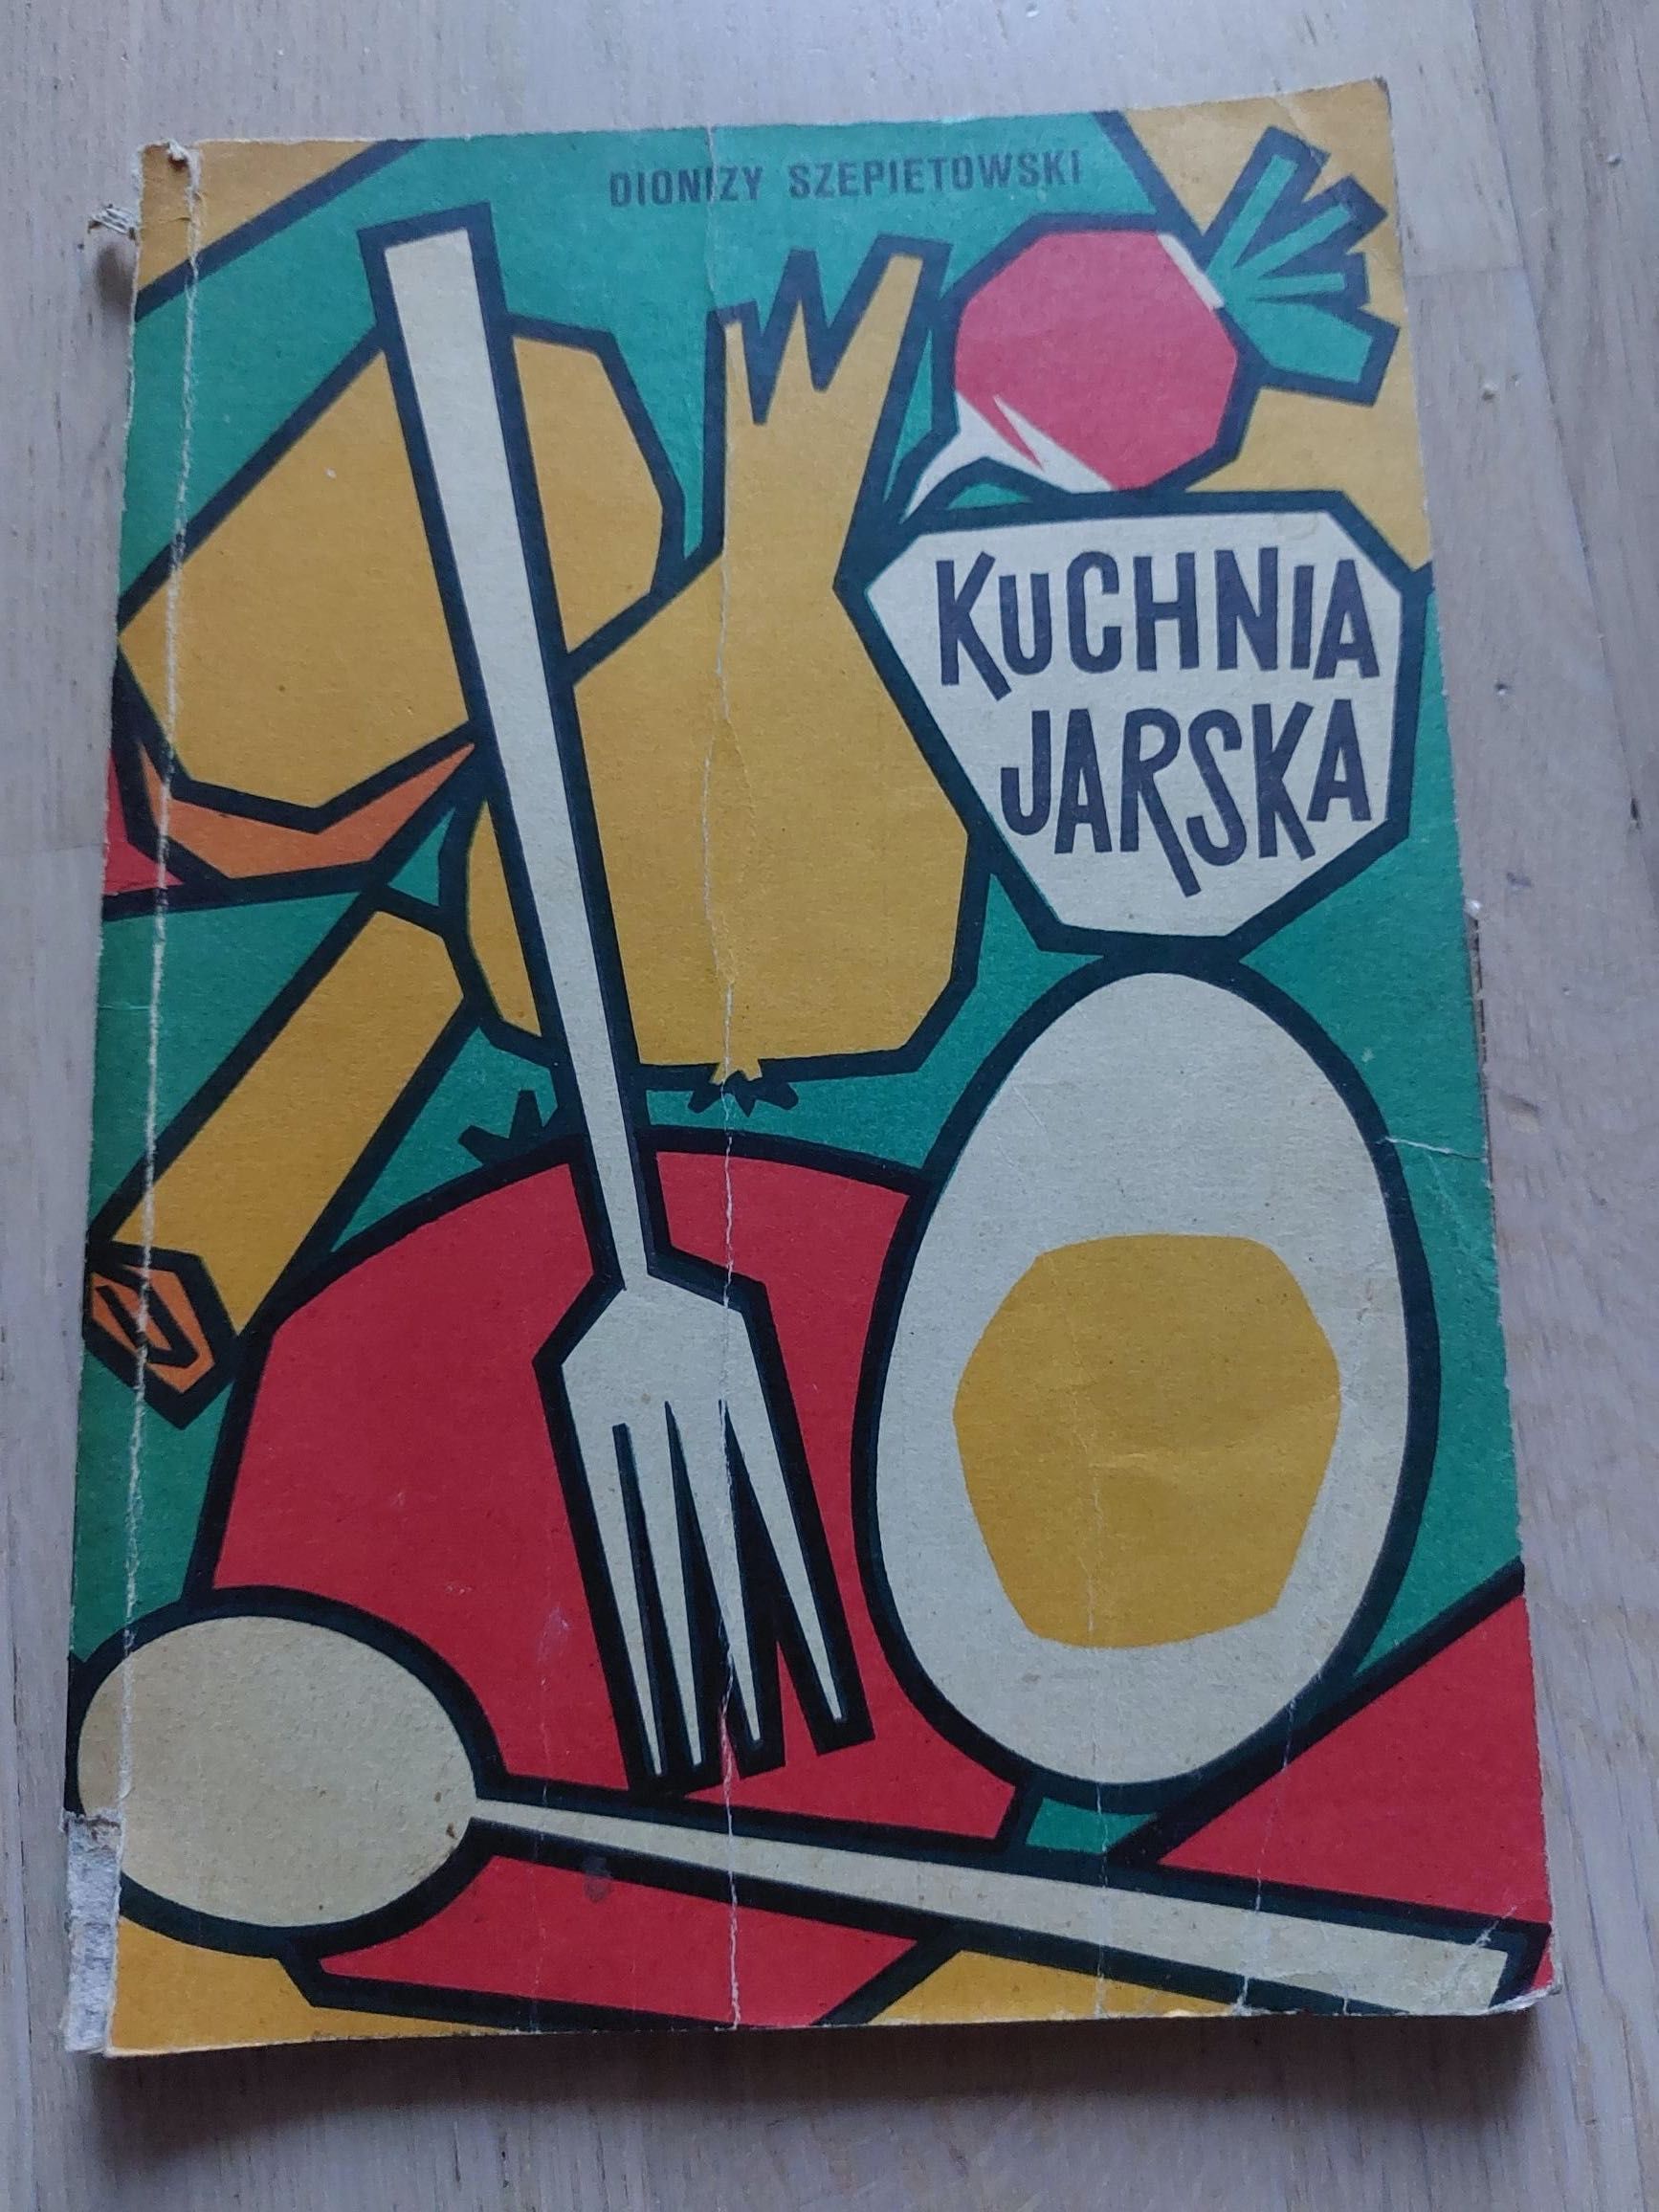 Dionizy Szepietowski, Kuchnia jarska, książka